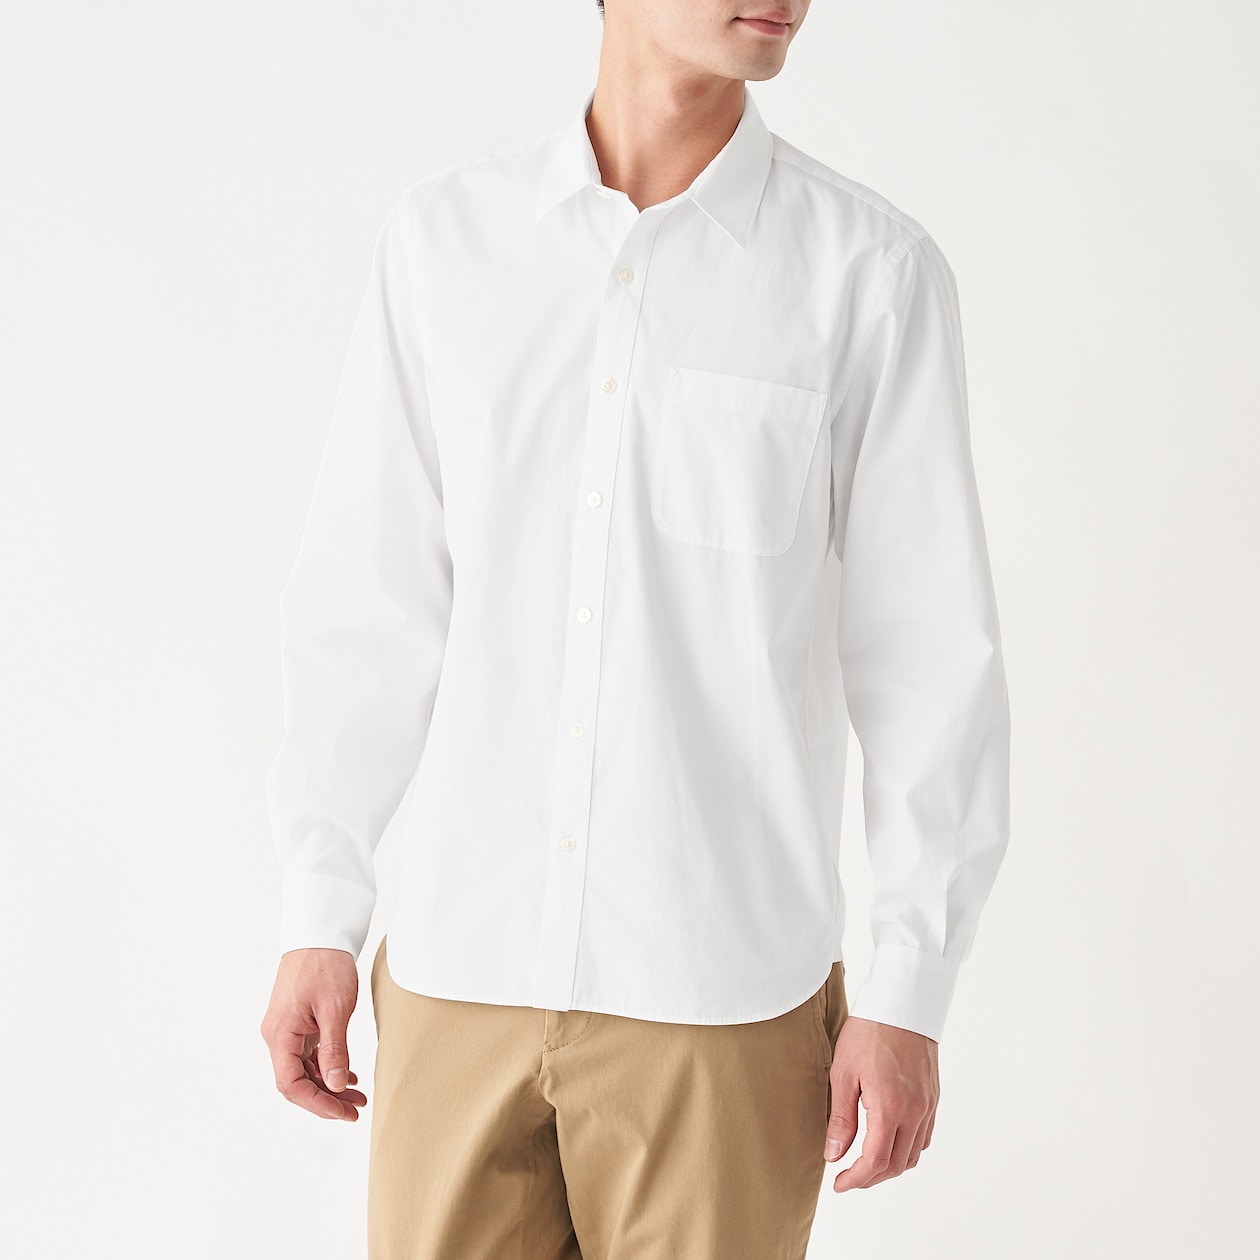 超長綿洗いざらしブロードシャツ 紳士ｘｌ 白 シャツ ワイシャツ 長袖 紳士 メンズ 通販 無印良品